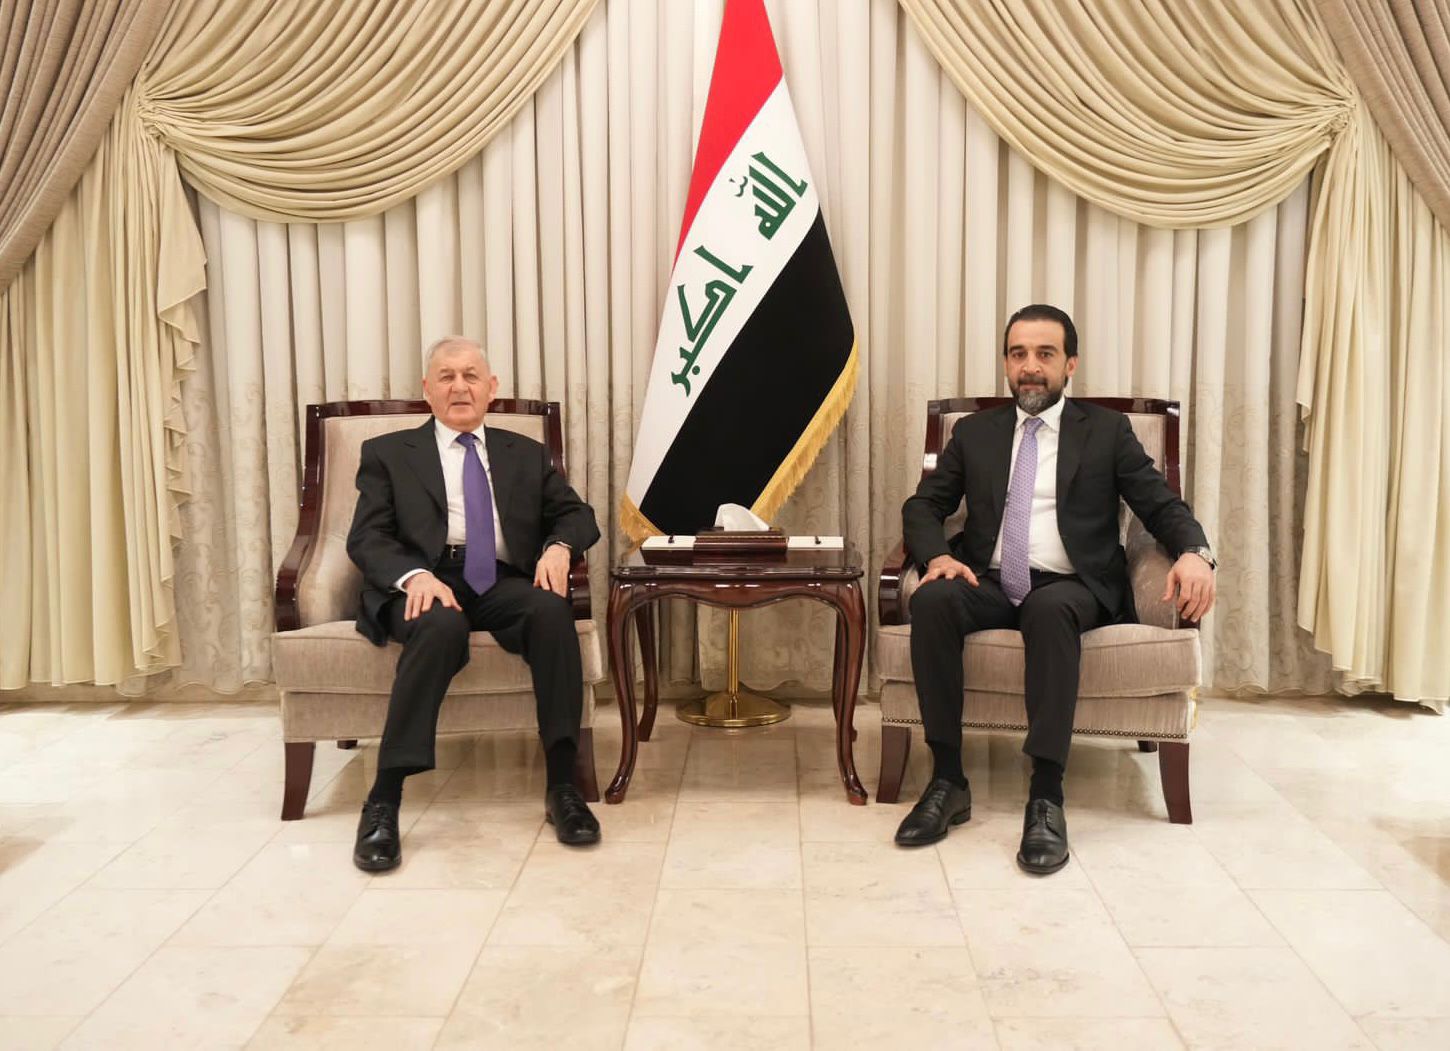 US ambassador meets with al-Halbousi